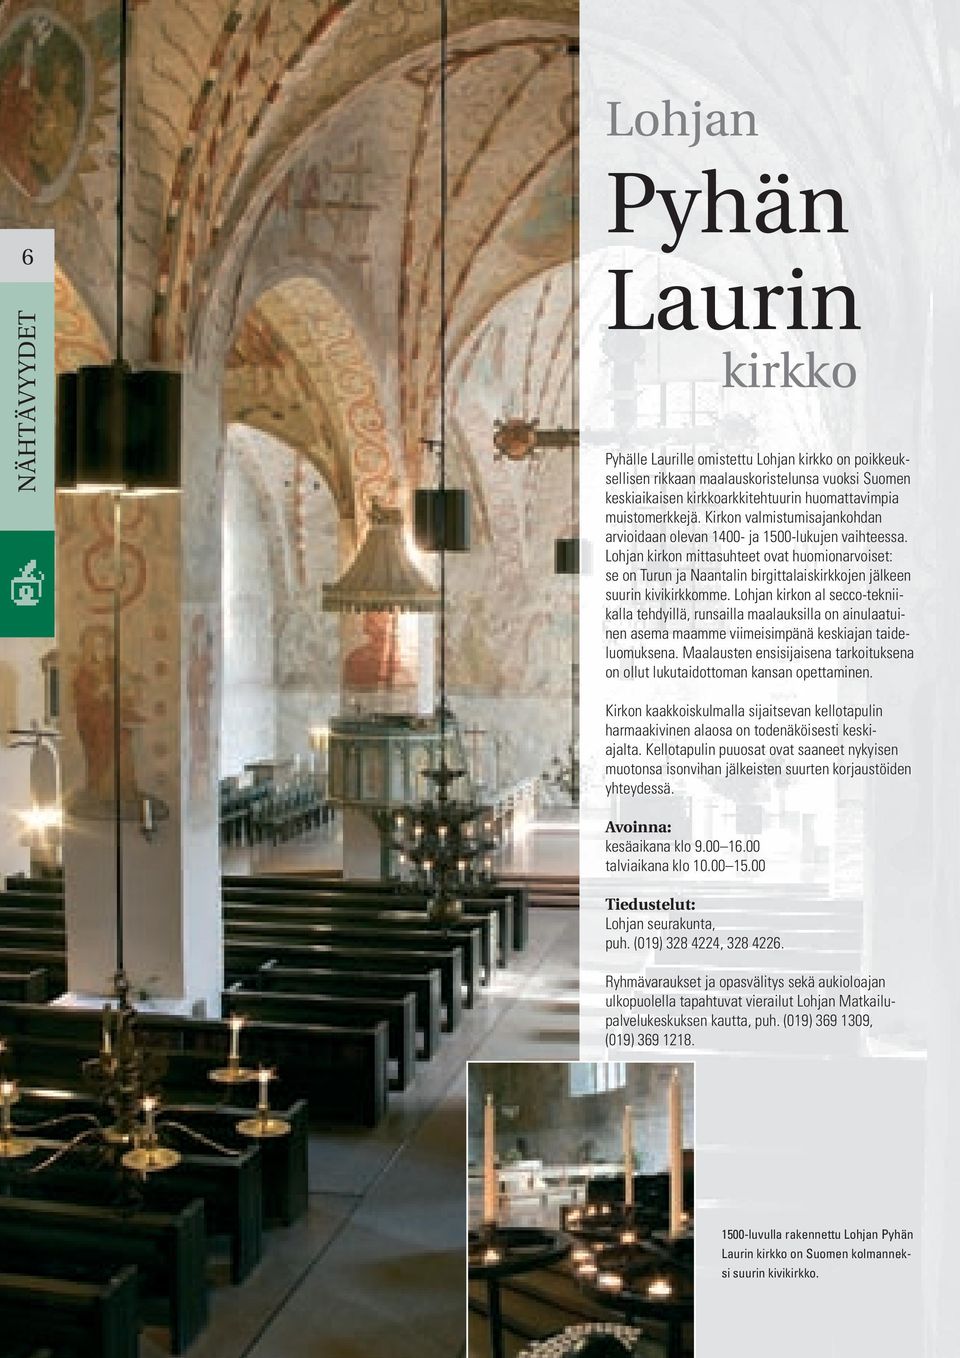 Lohjan kirkon mittasuhteet ovat huomionarvoiset: se on Turun ja Naantalin birgittalaiskirkkojen jälkeen suurin kivikirkkomme.